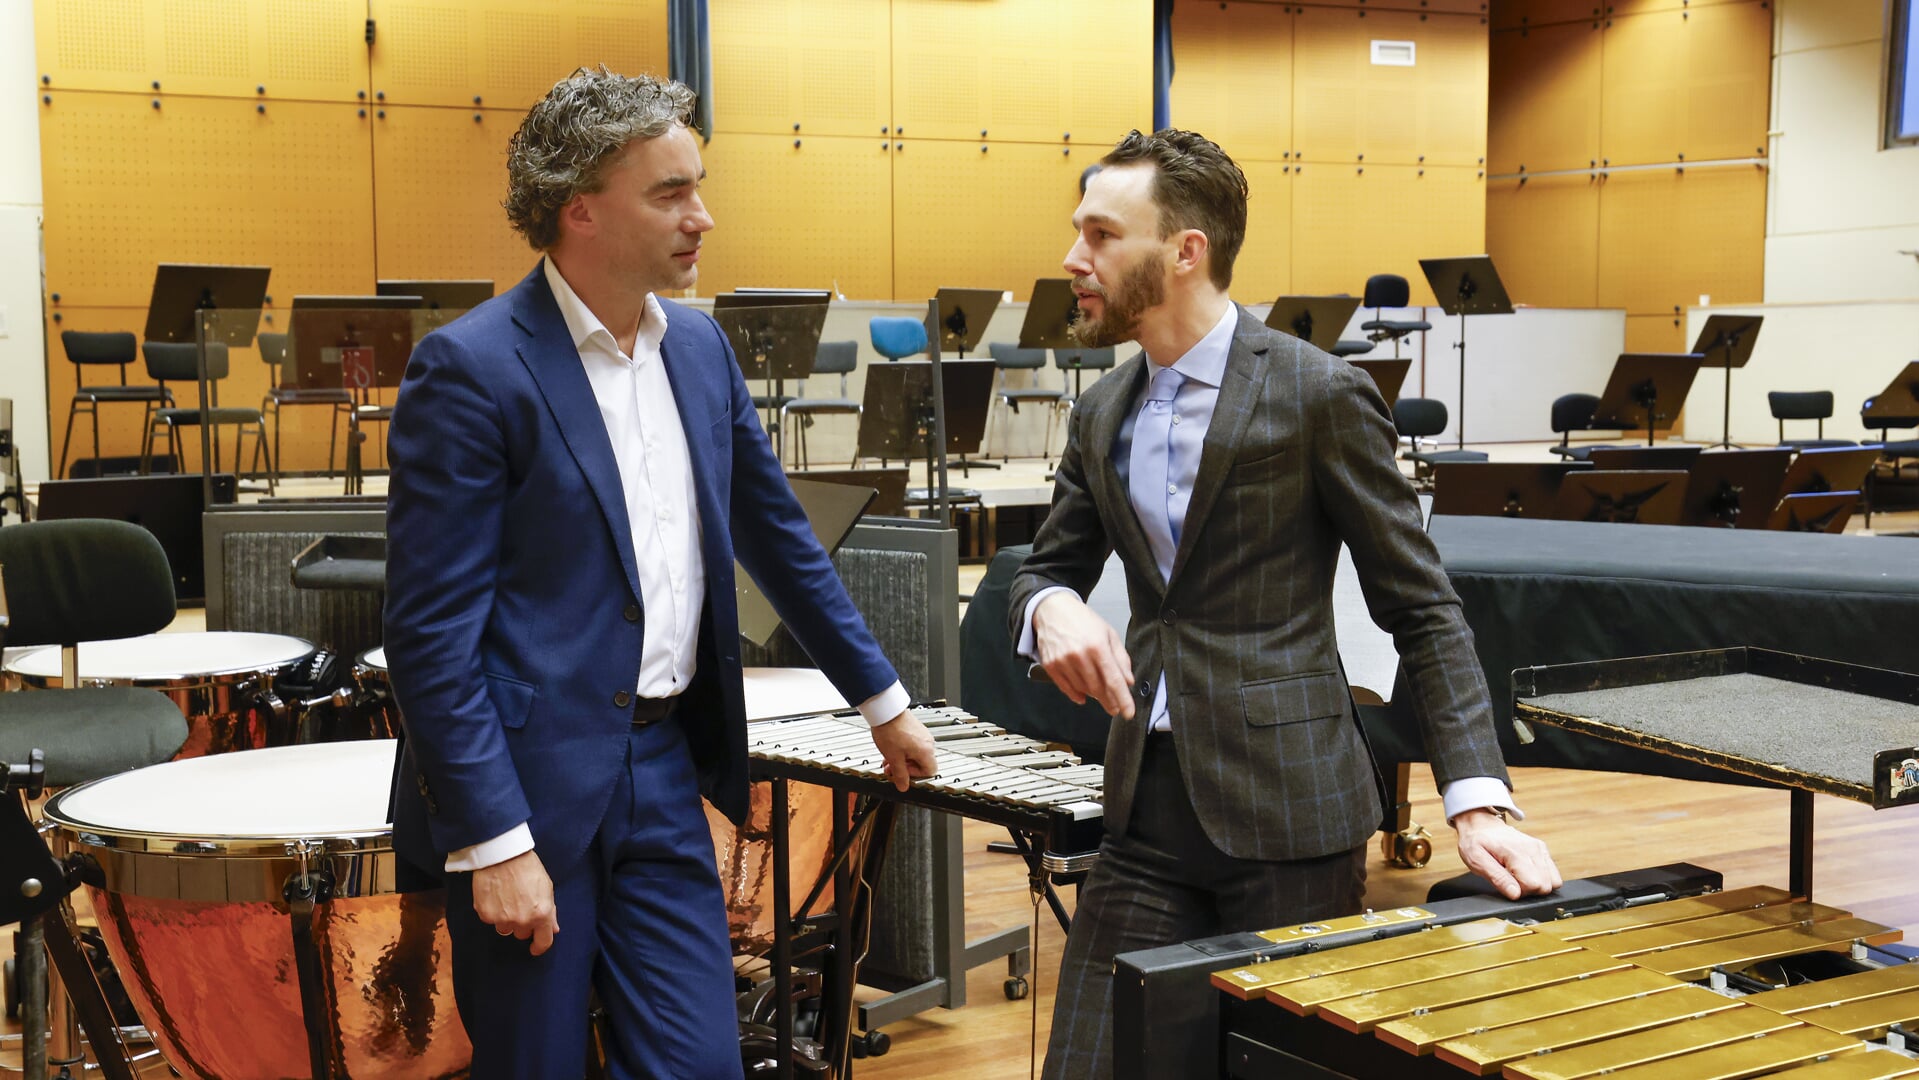 Arno Scheepers en Jan Geert Vierkant (directeur Metropole Orkest).